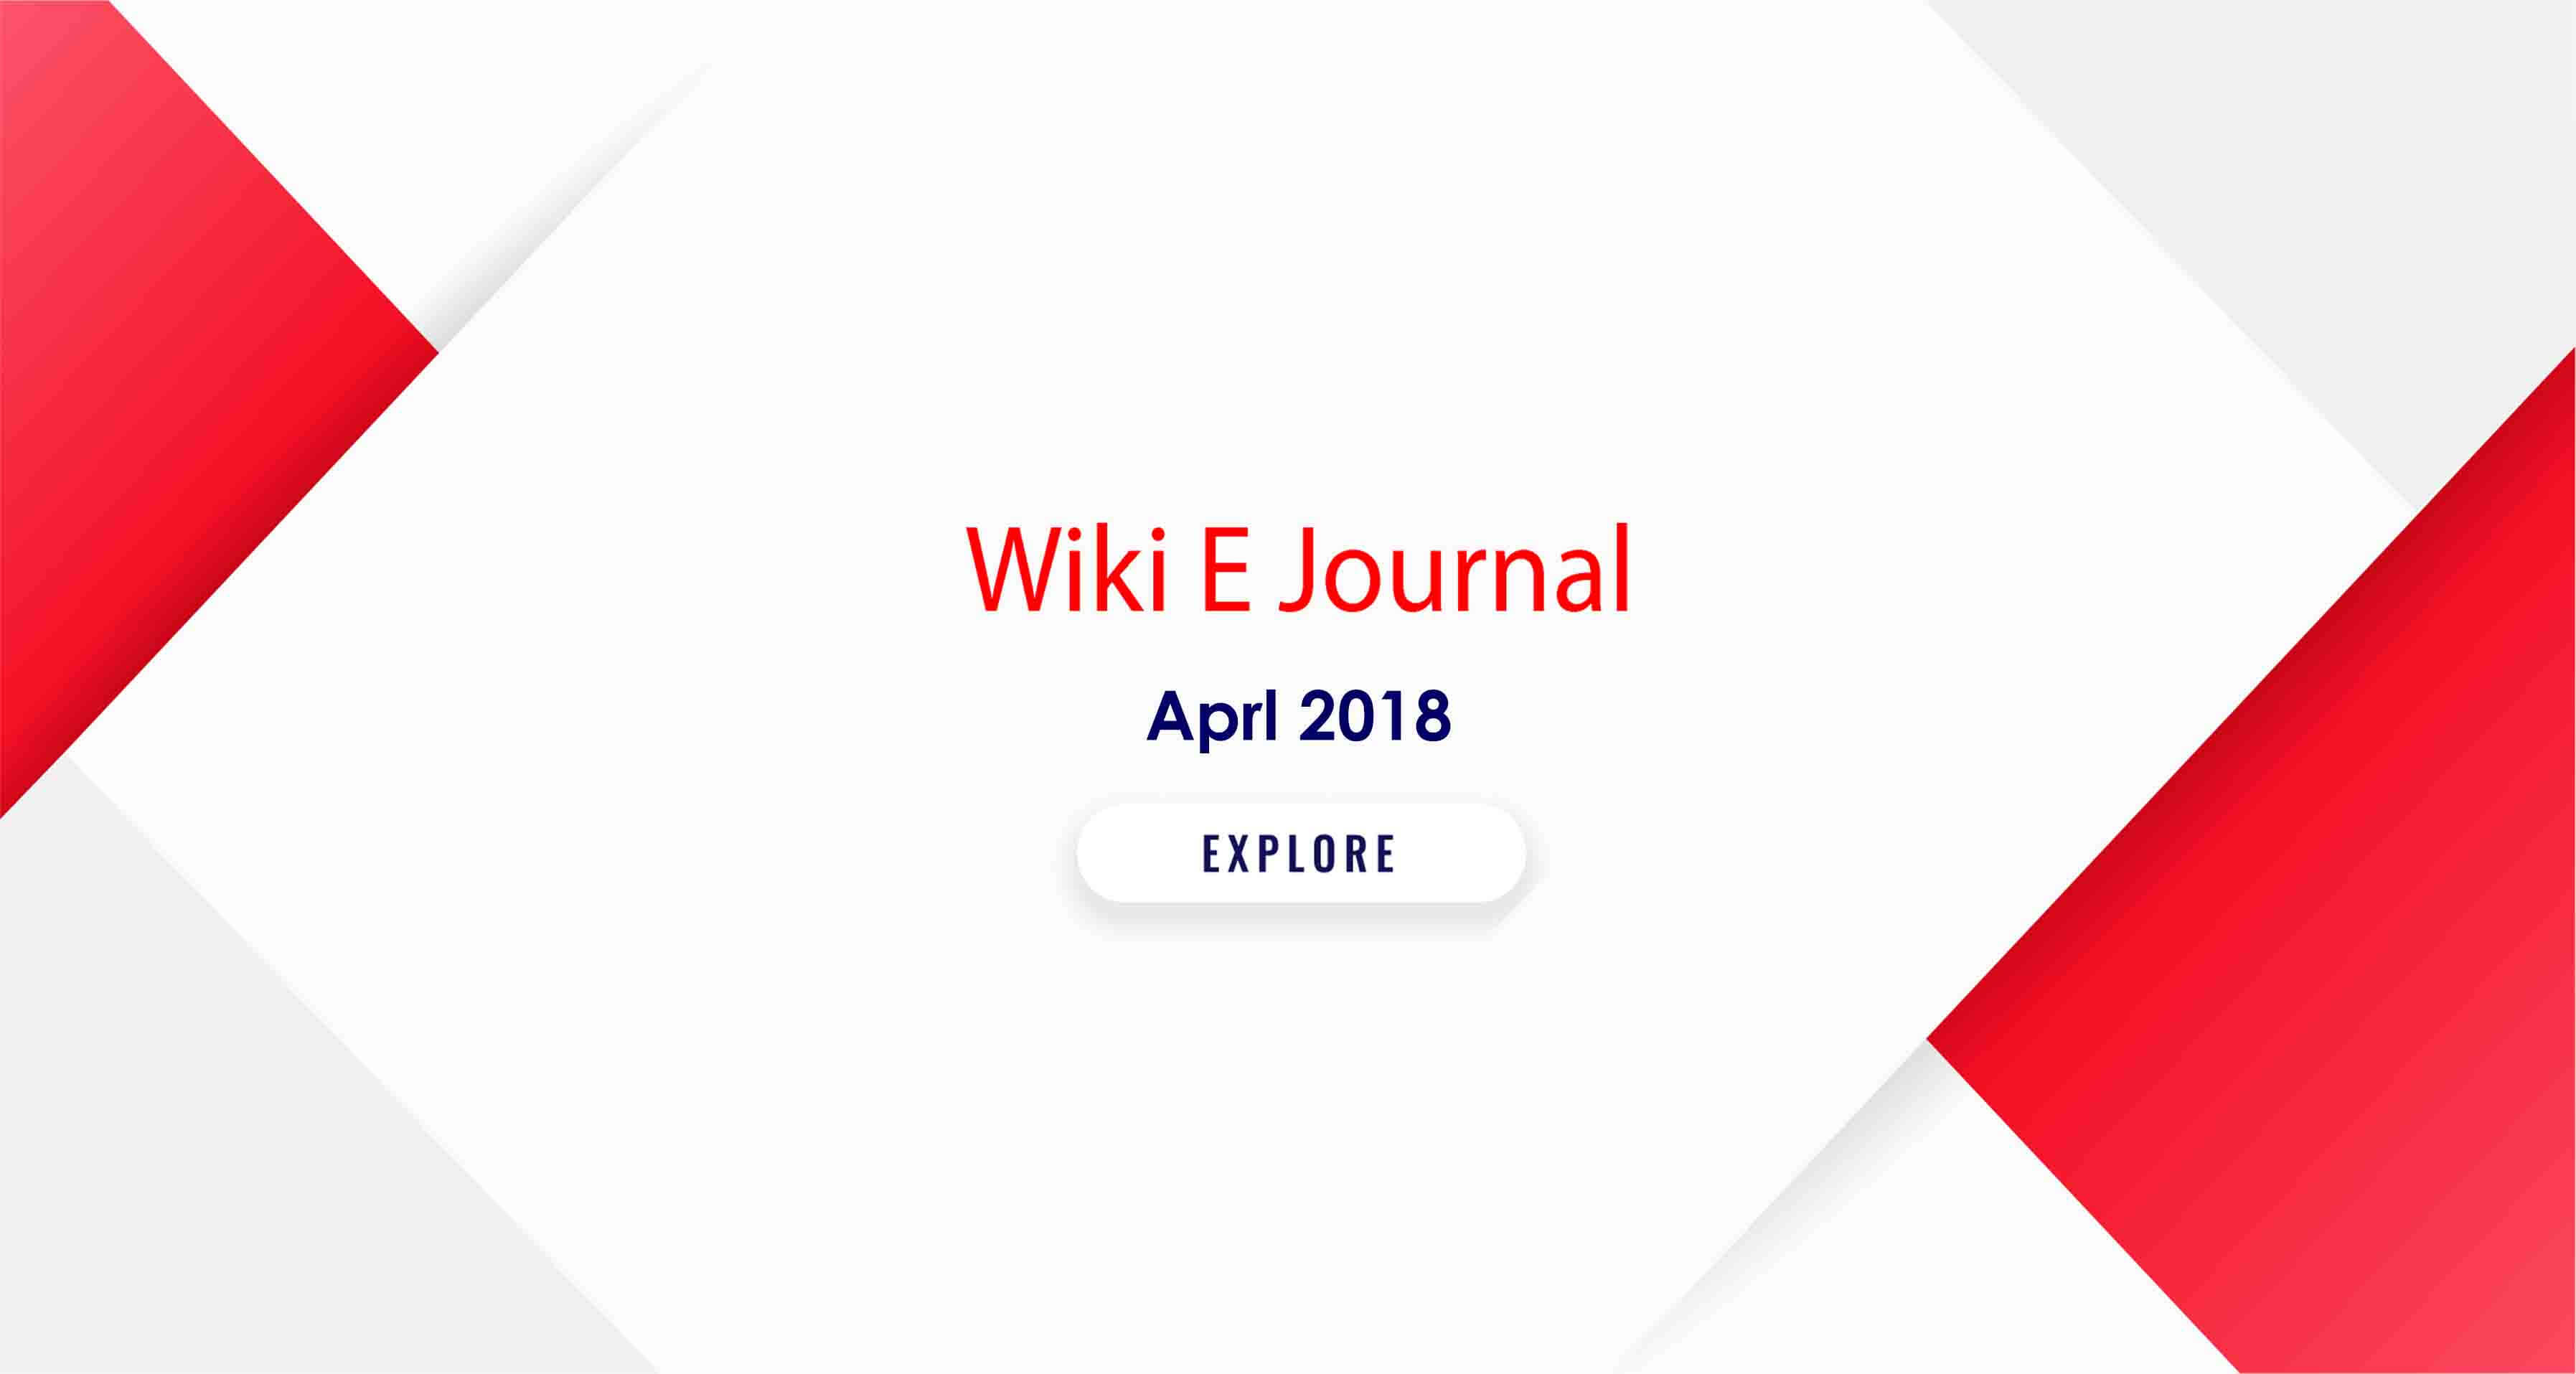 SBS WIKI E Journal APRL 2018